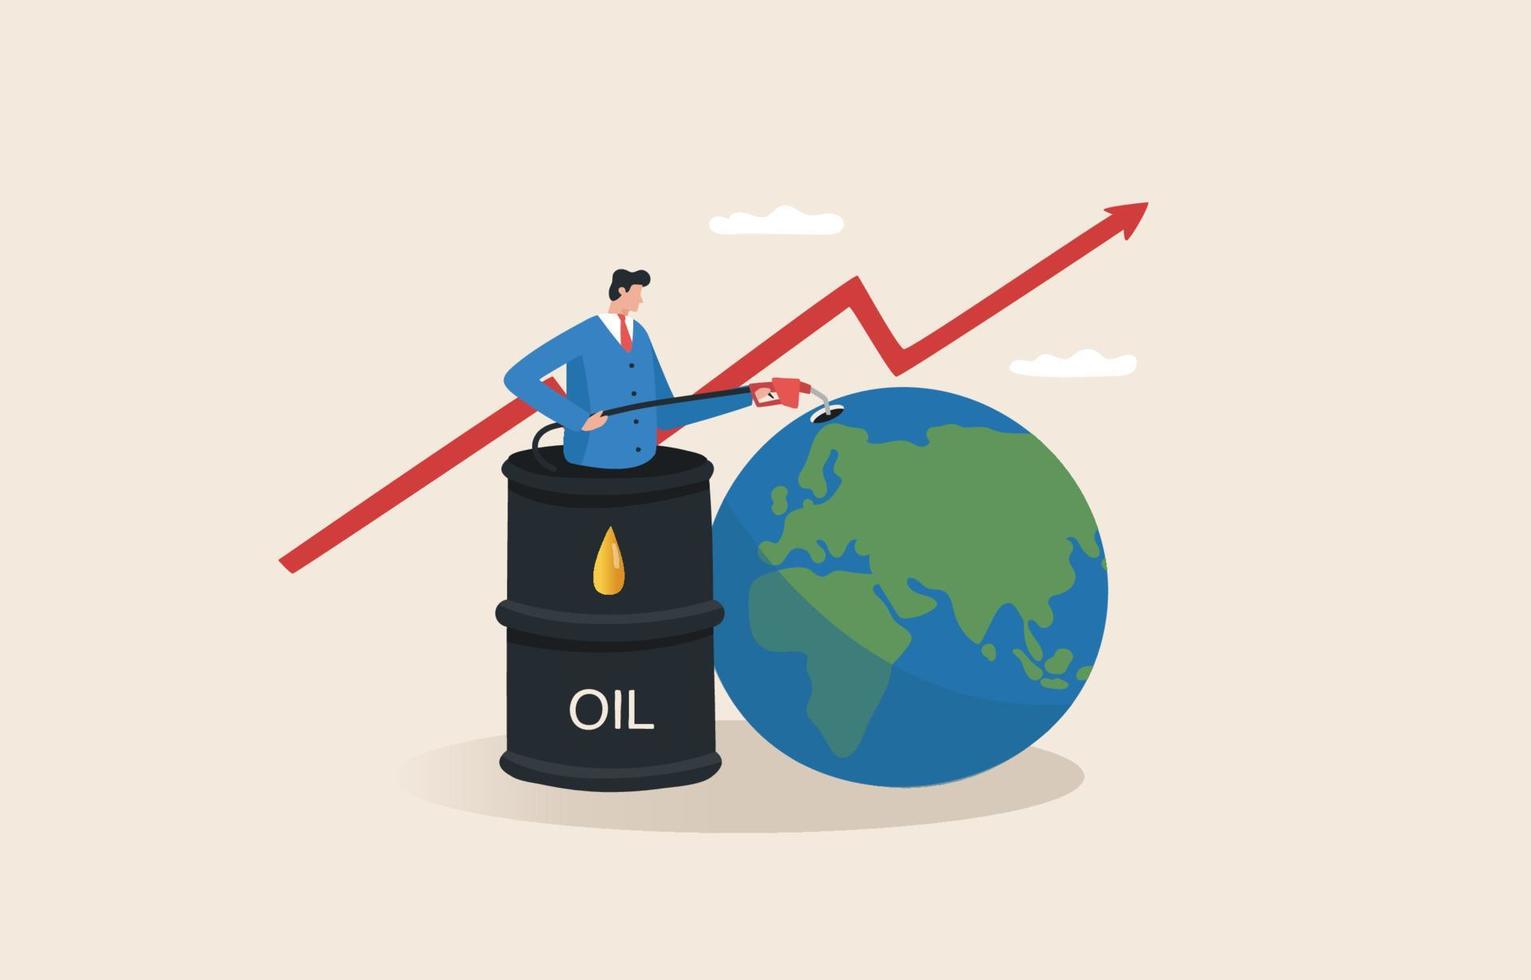 Die Ölkrise ist teuer. Mangel an Öl. die Volatilität der Rohölpreise auf dem Weltmarkt. Boykott, Kriege. Vektor-Illustration vektor